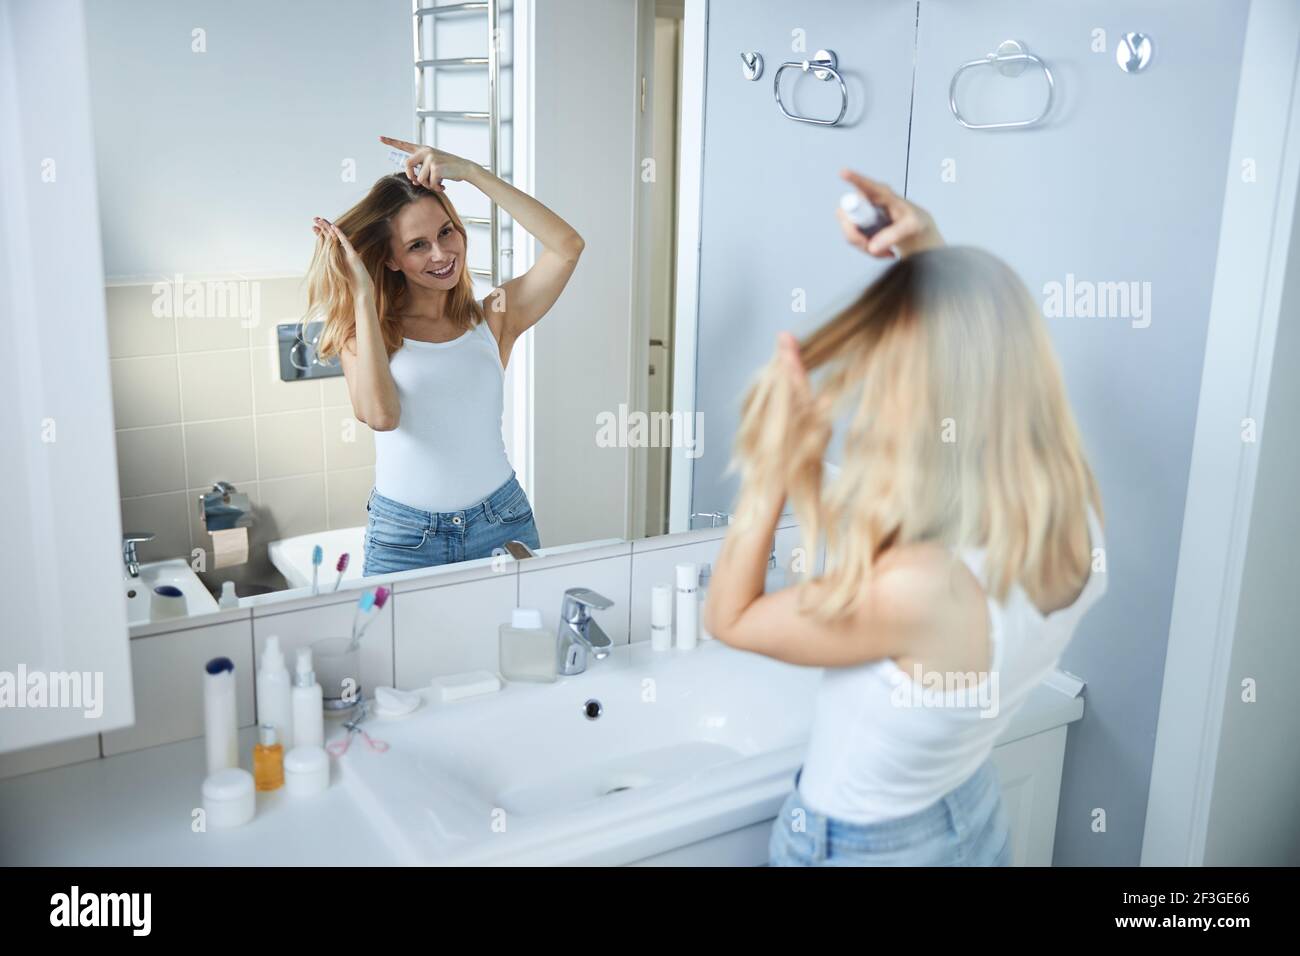 Fröhliche junge Frau mit Haarspray im Badezimmer Stockfotografie - Alamy